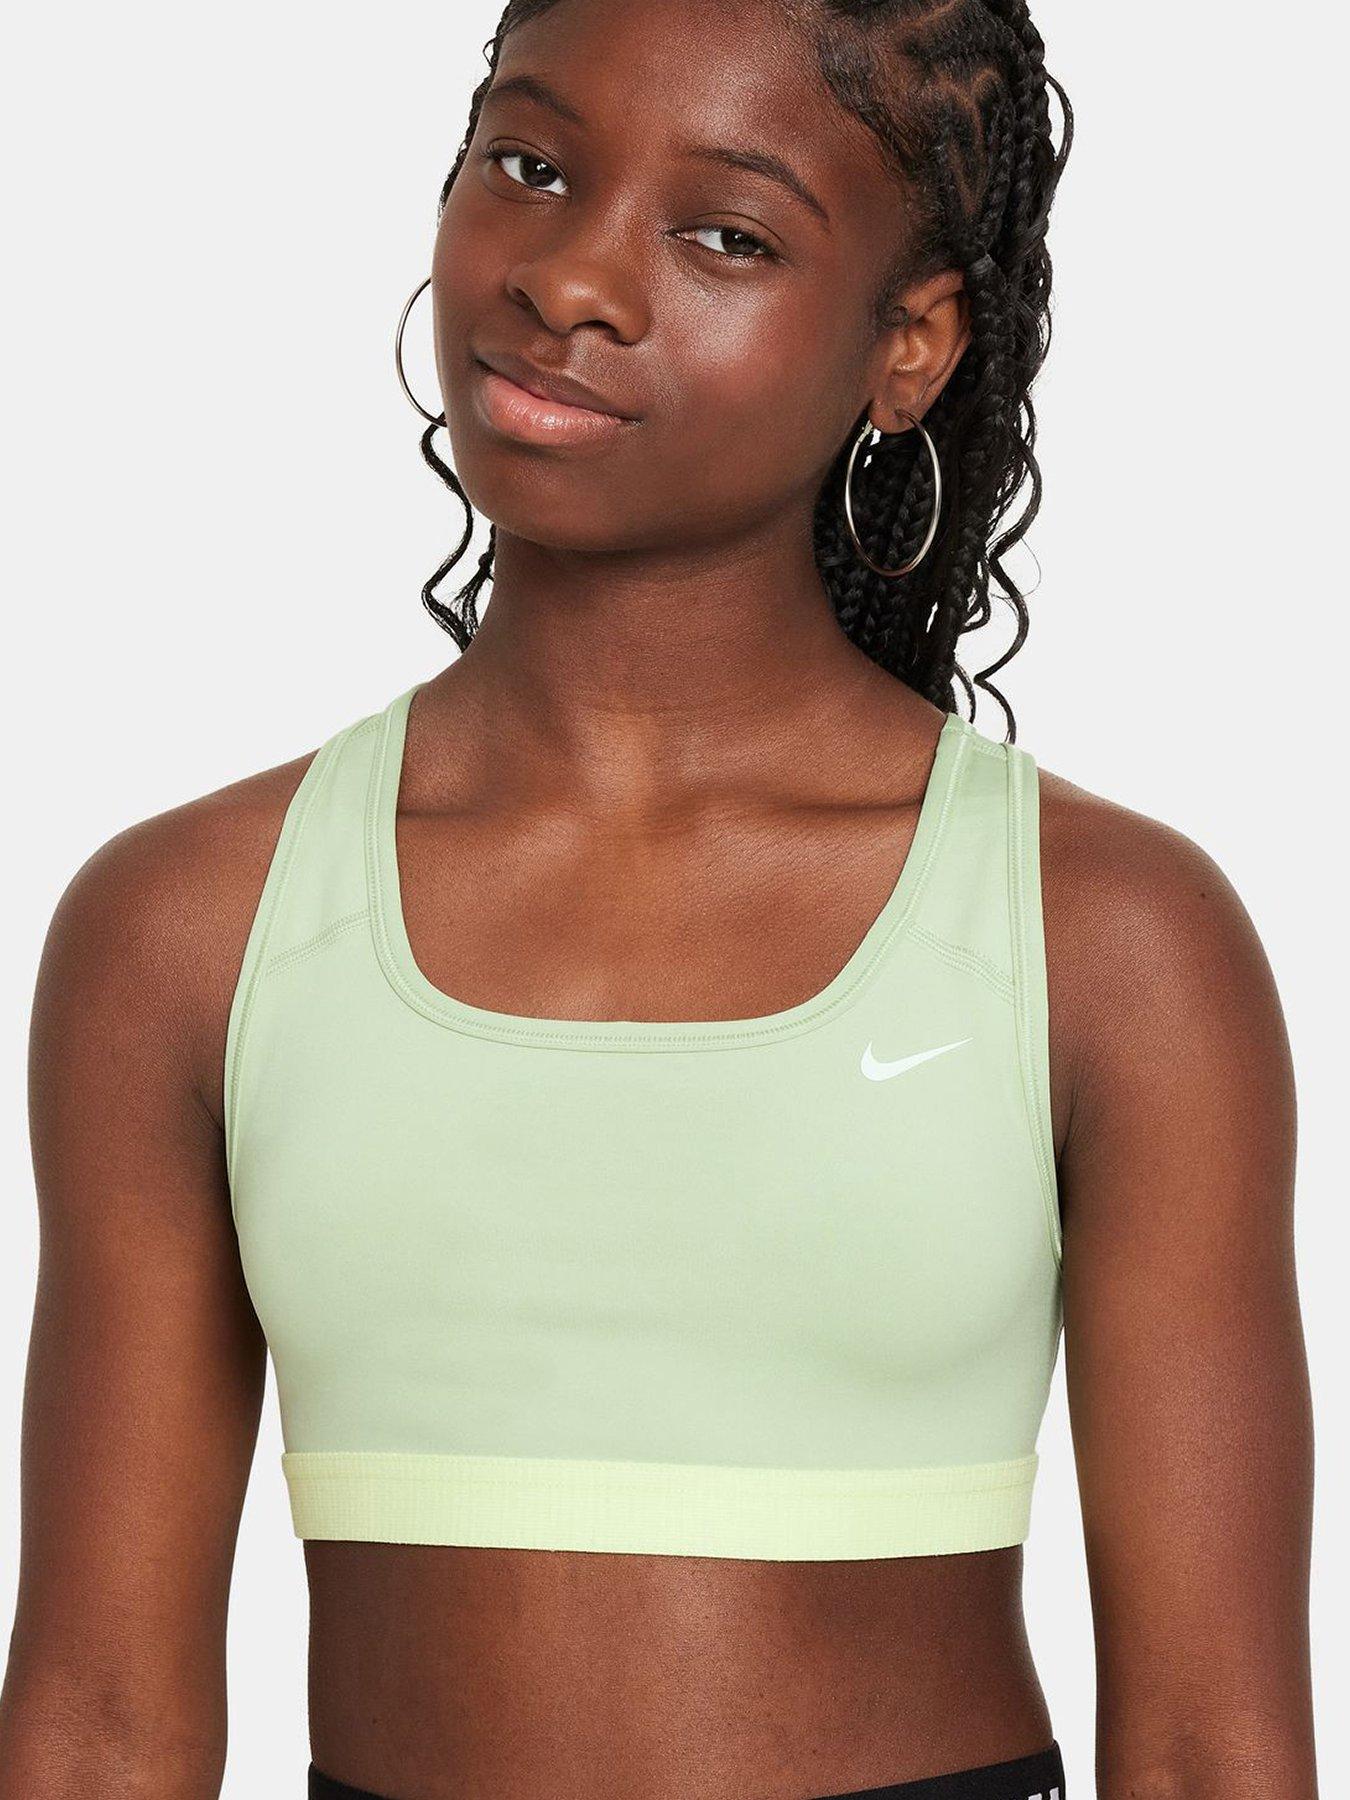 Girls Sale Nike Underwear. Nike IN